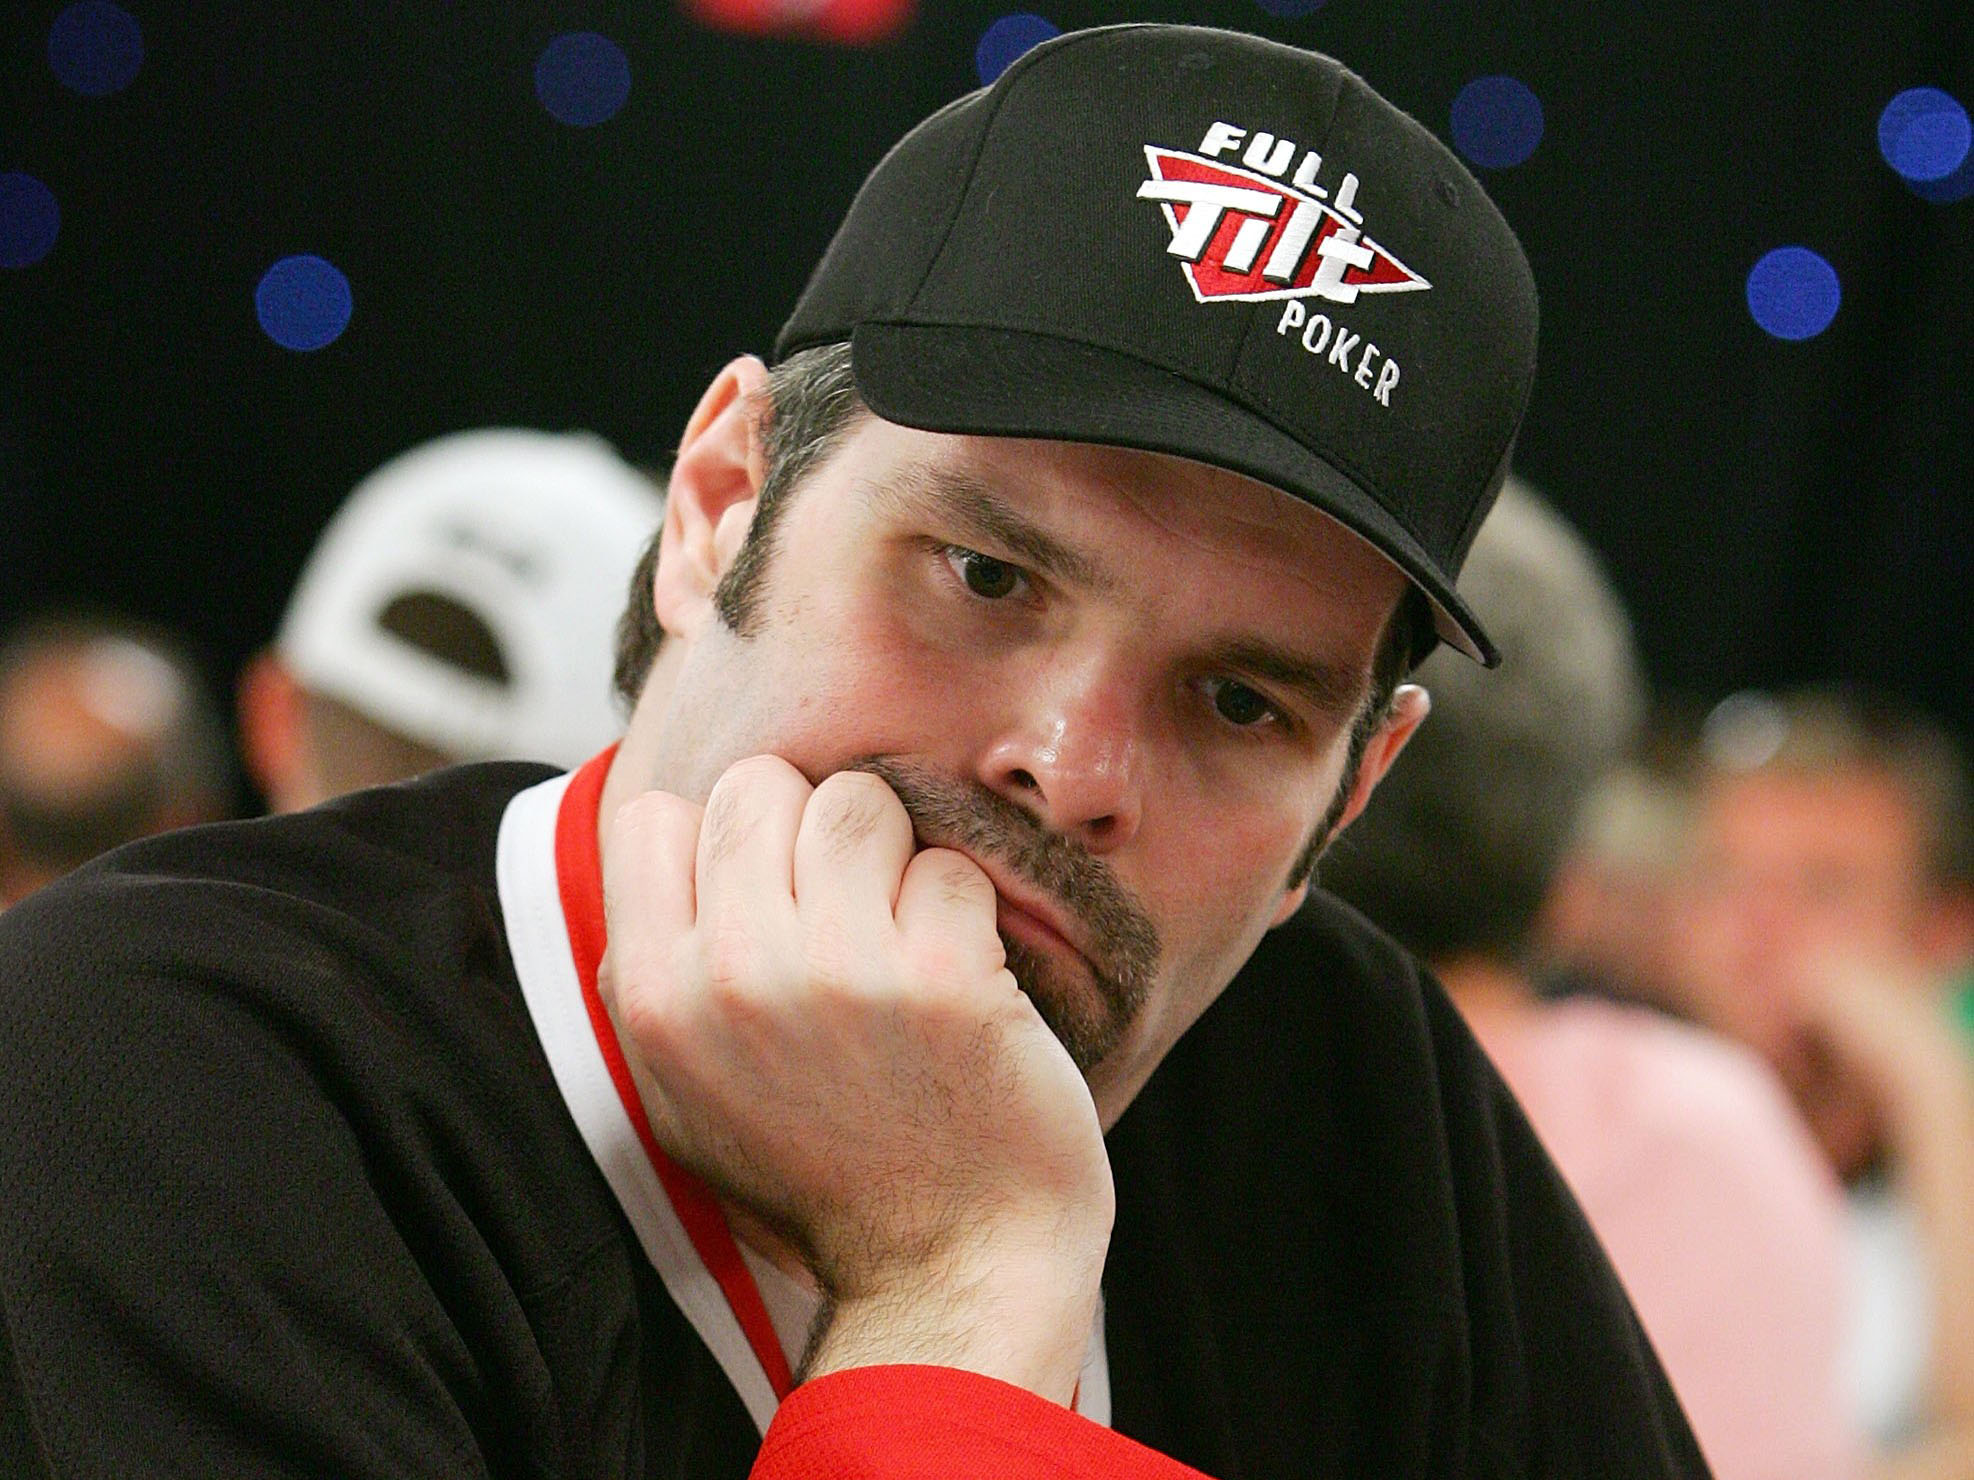 Howard Lederer WSOP poker